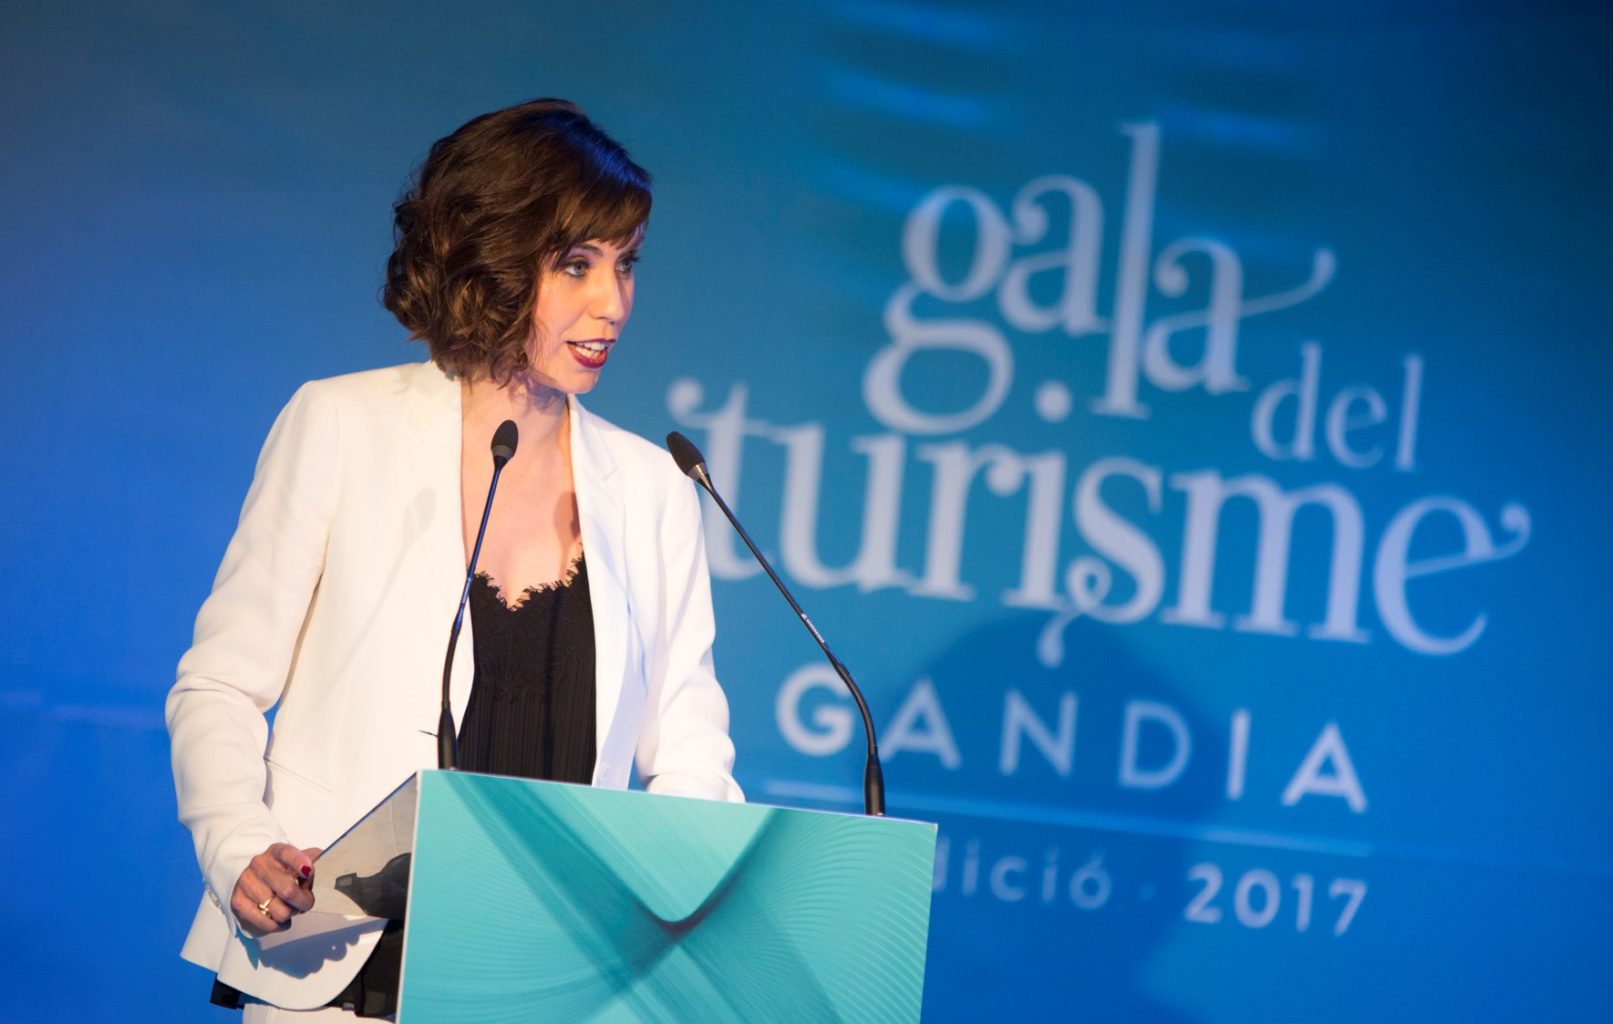 Diana Morant Primera Gala de Turisme de Gandia